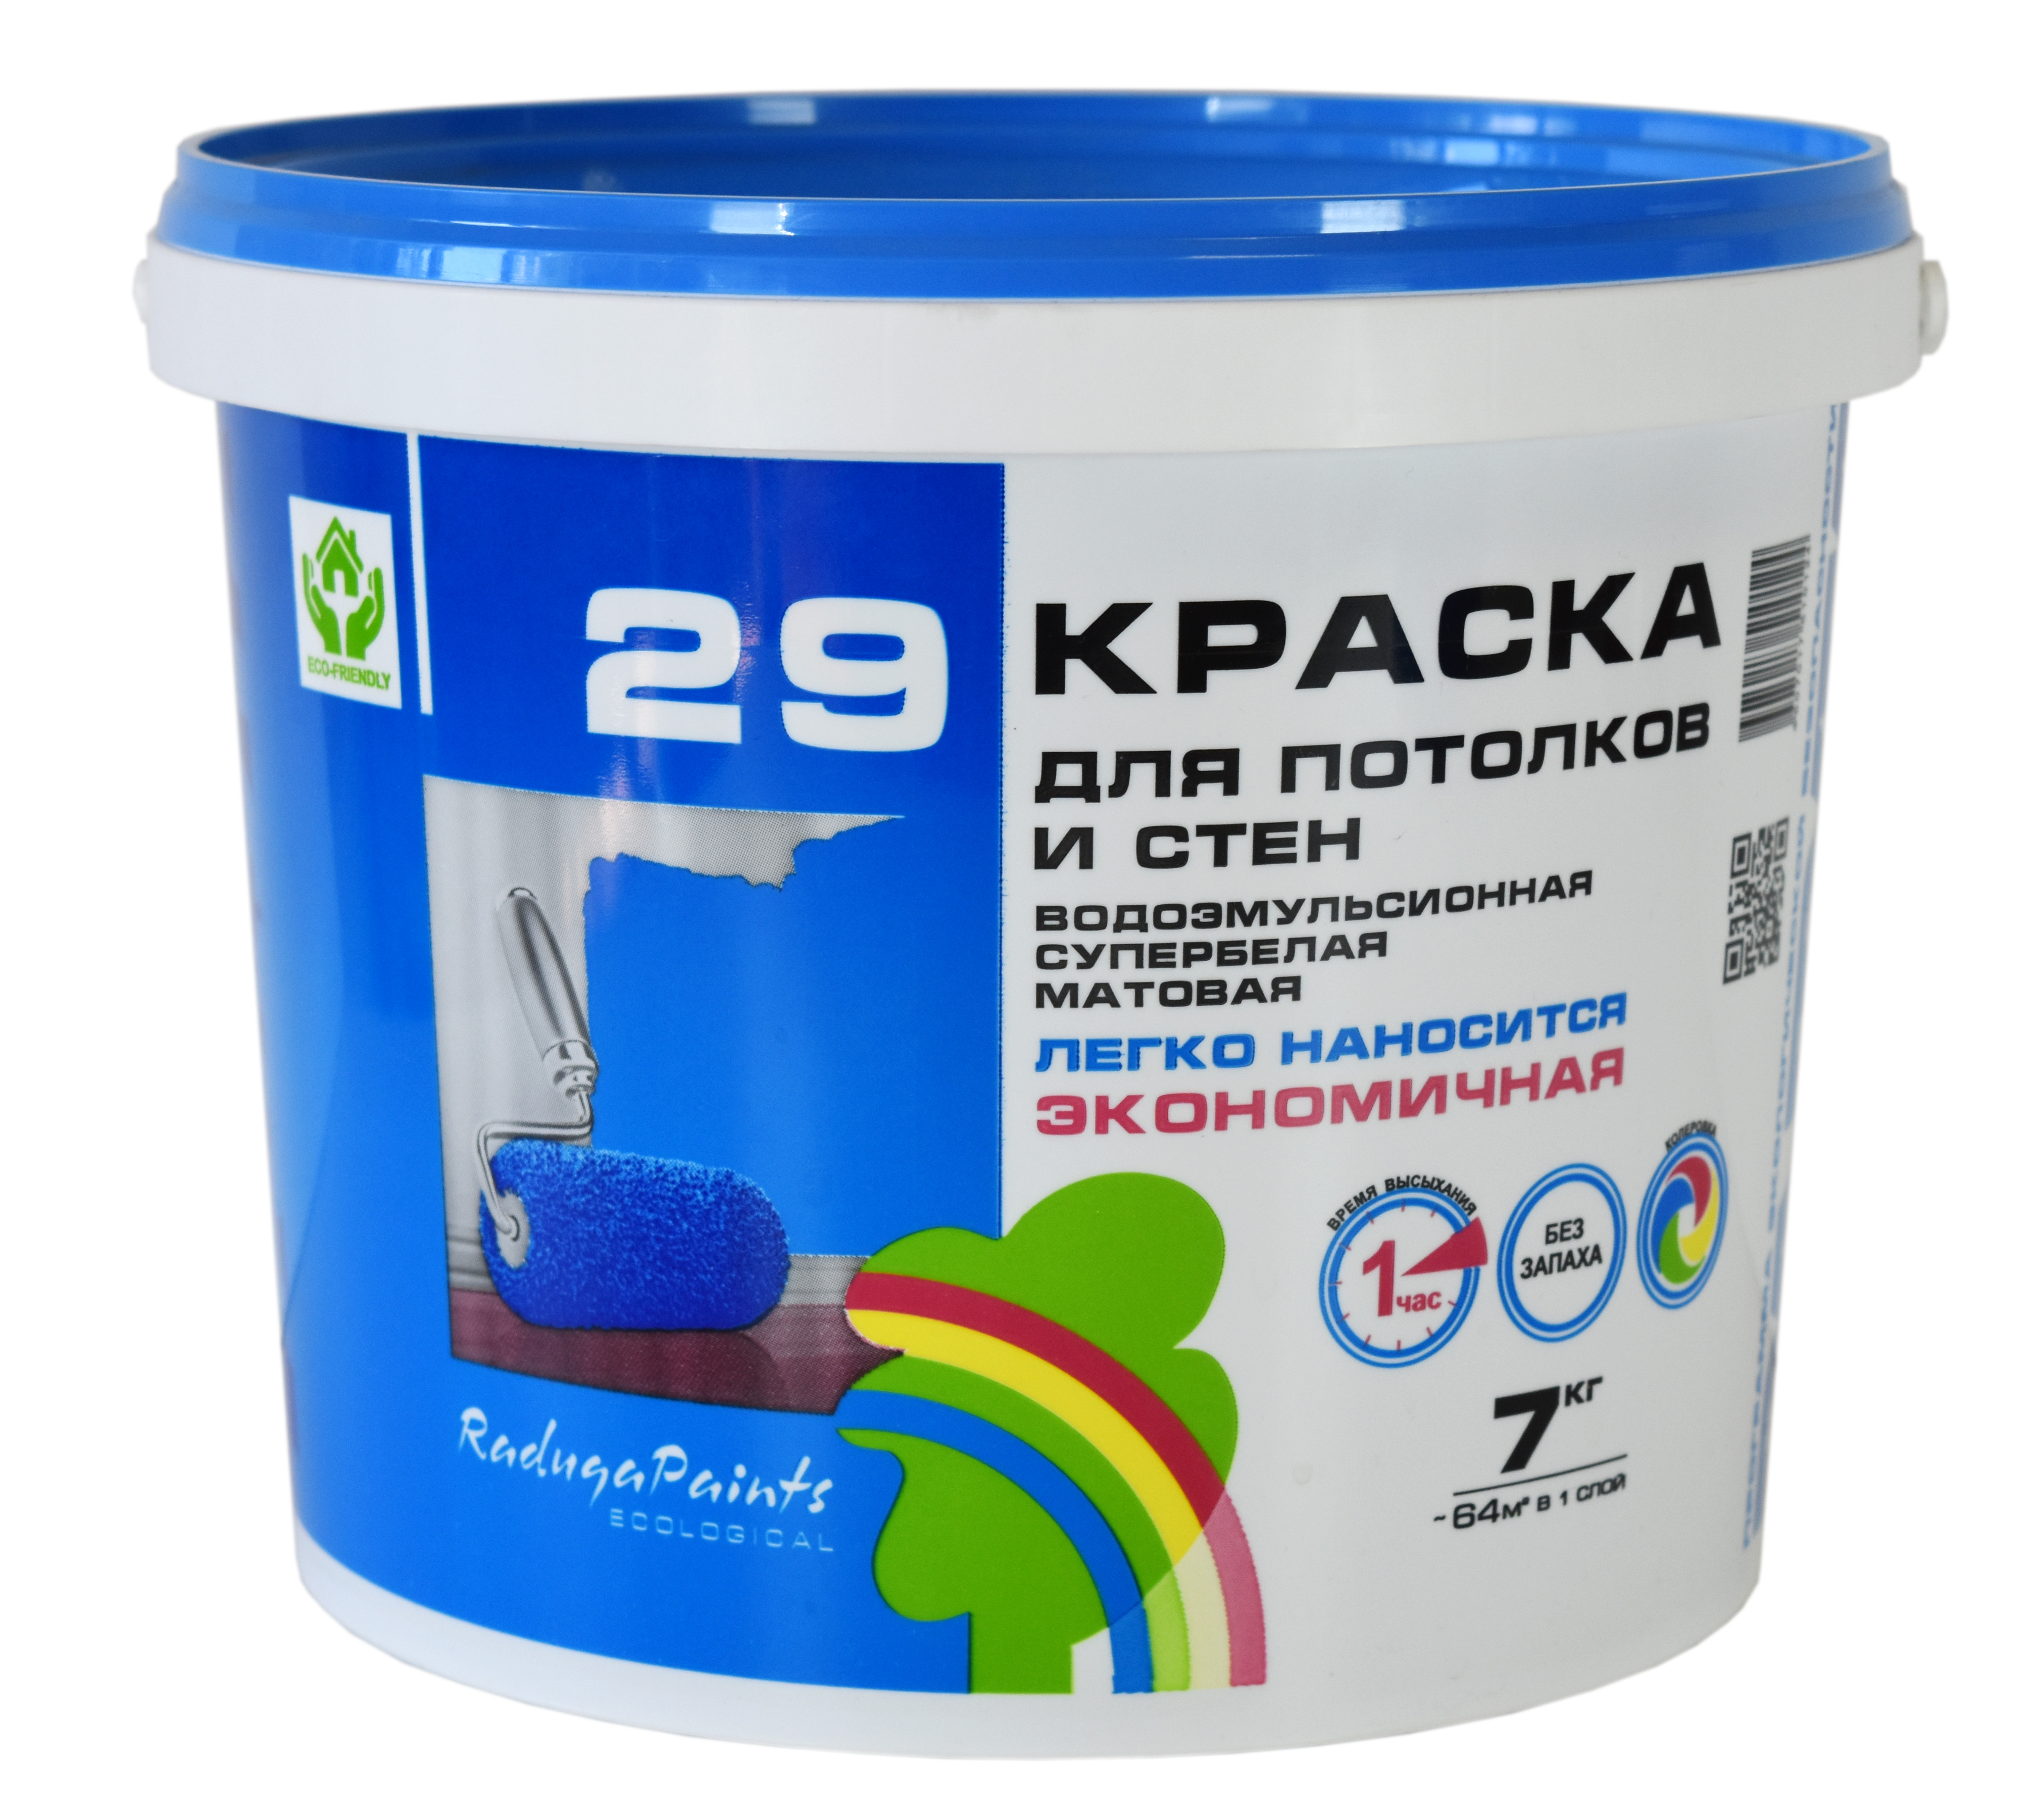 Краска водоэмульсионная Радуга-29 цвет белый 7 кг – купить в Алматы по ...